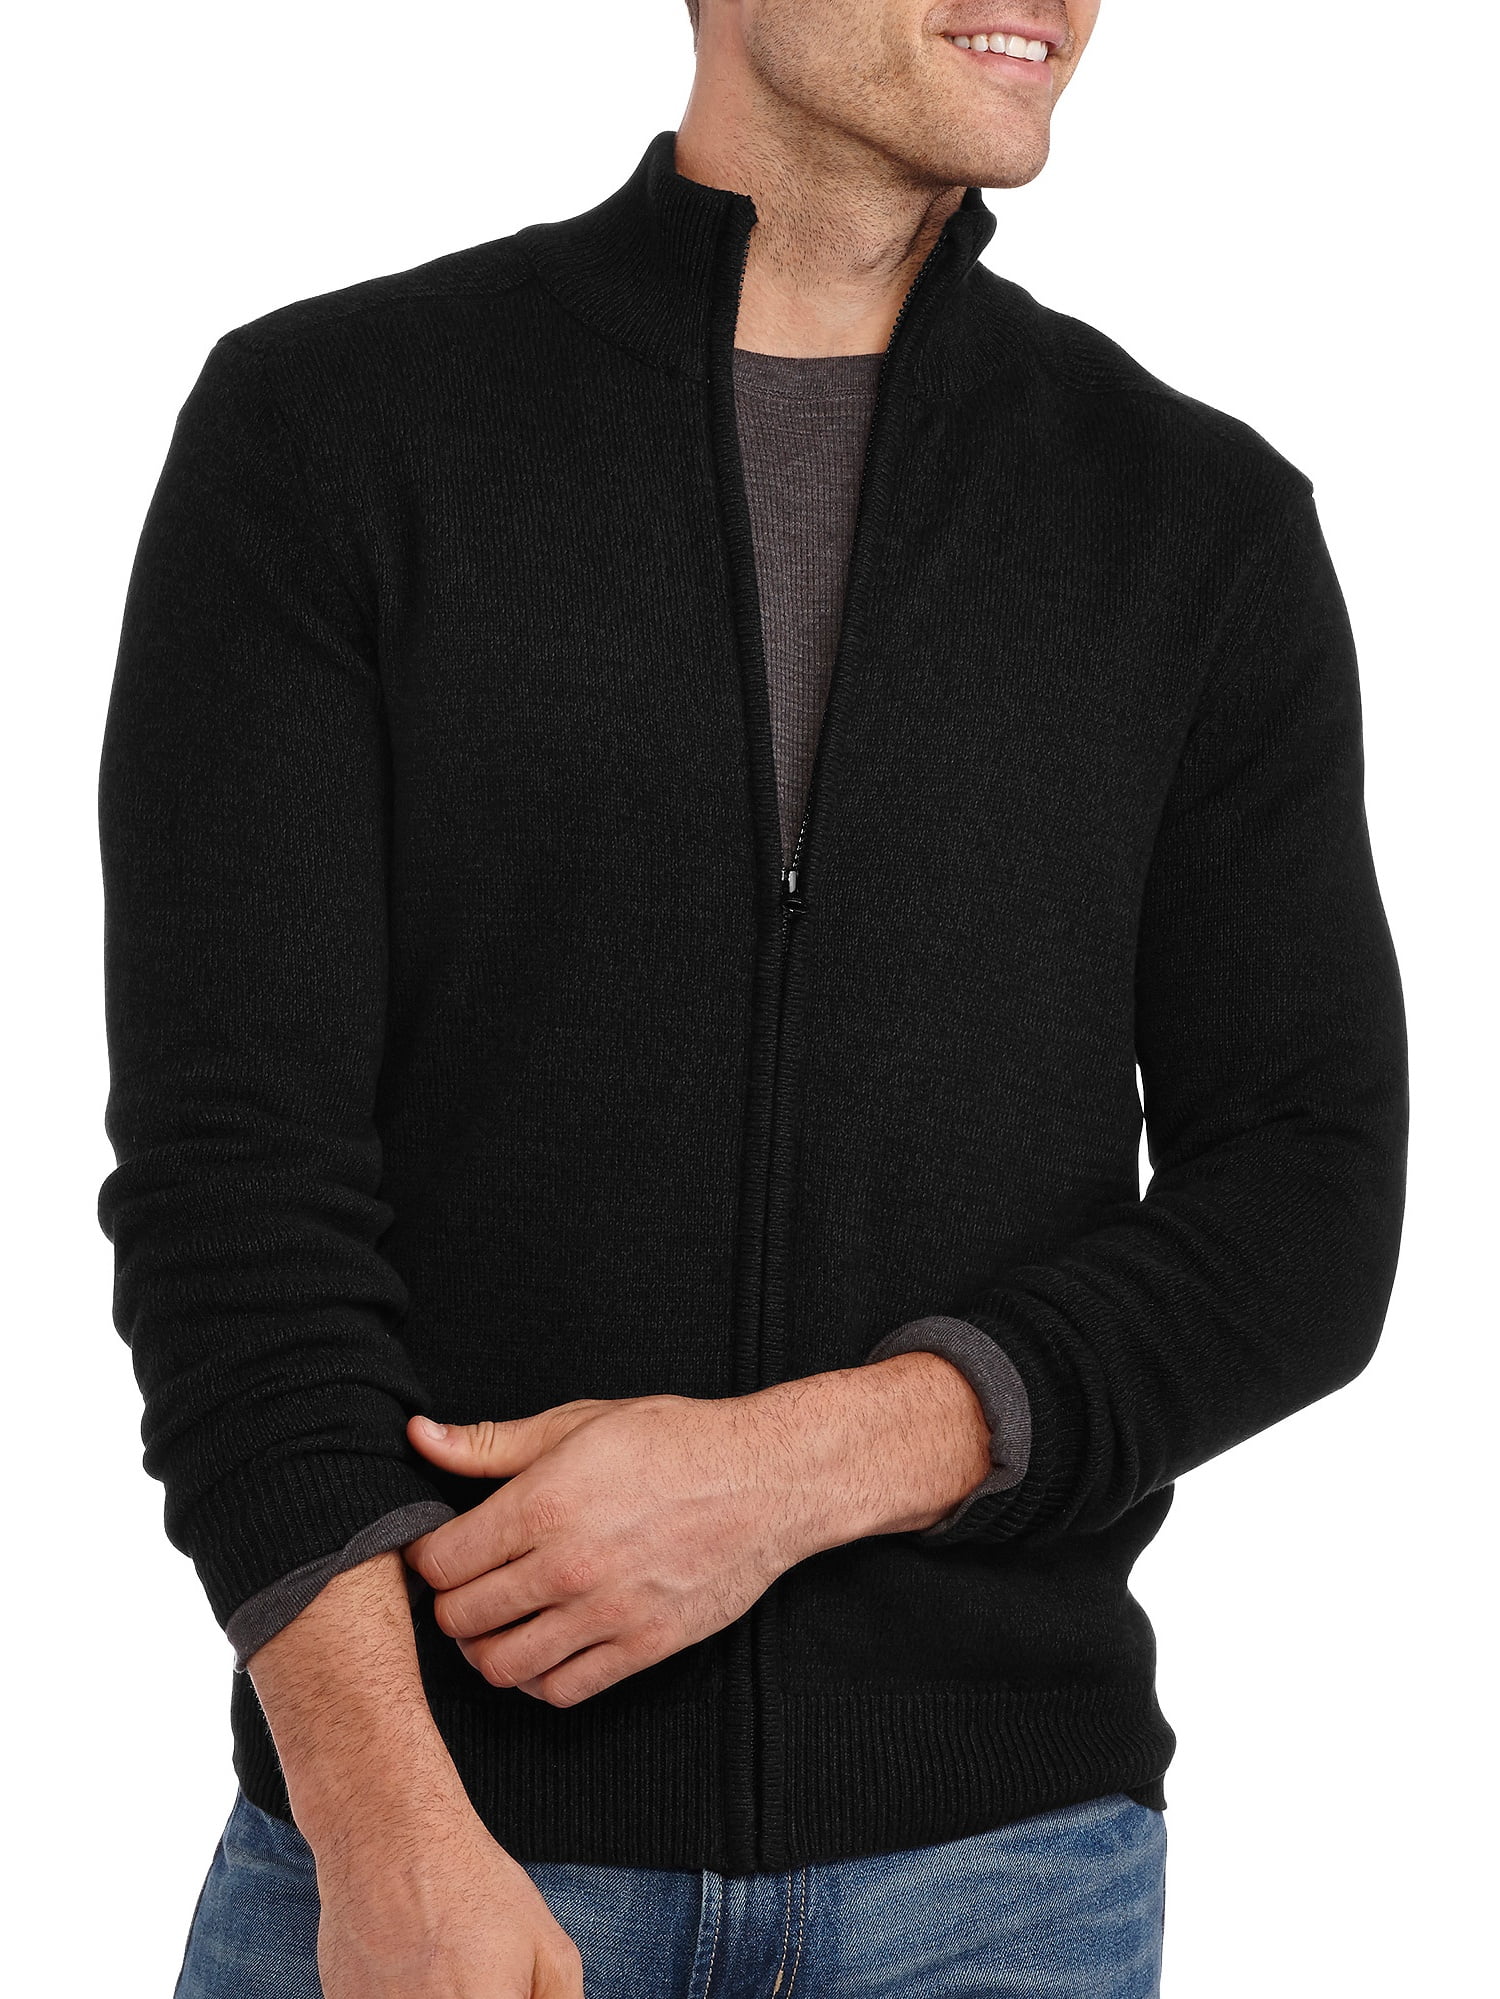 Men's Zip-Up Turtleneck Sweater - Walmart.com